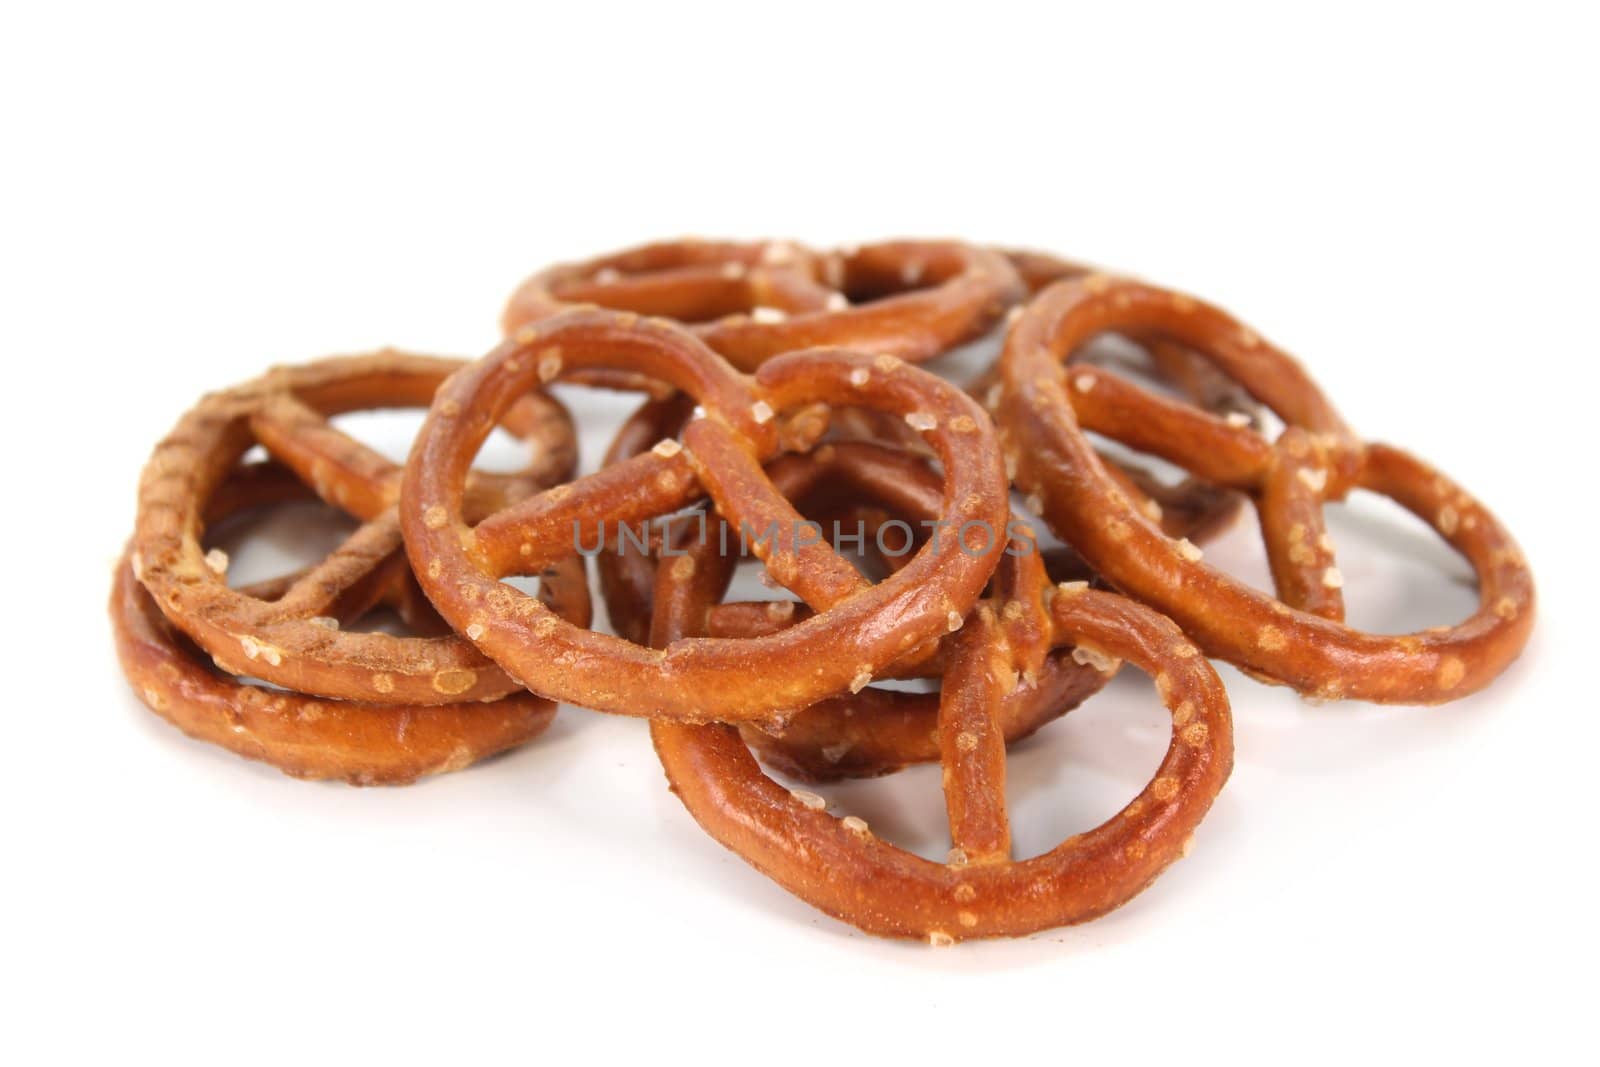 Salt pretzels by silencefoto